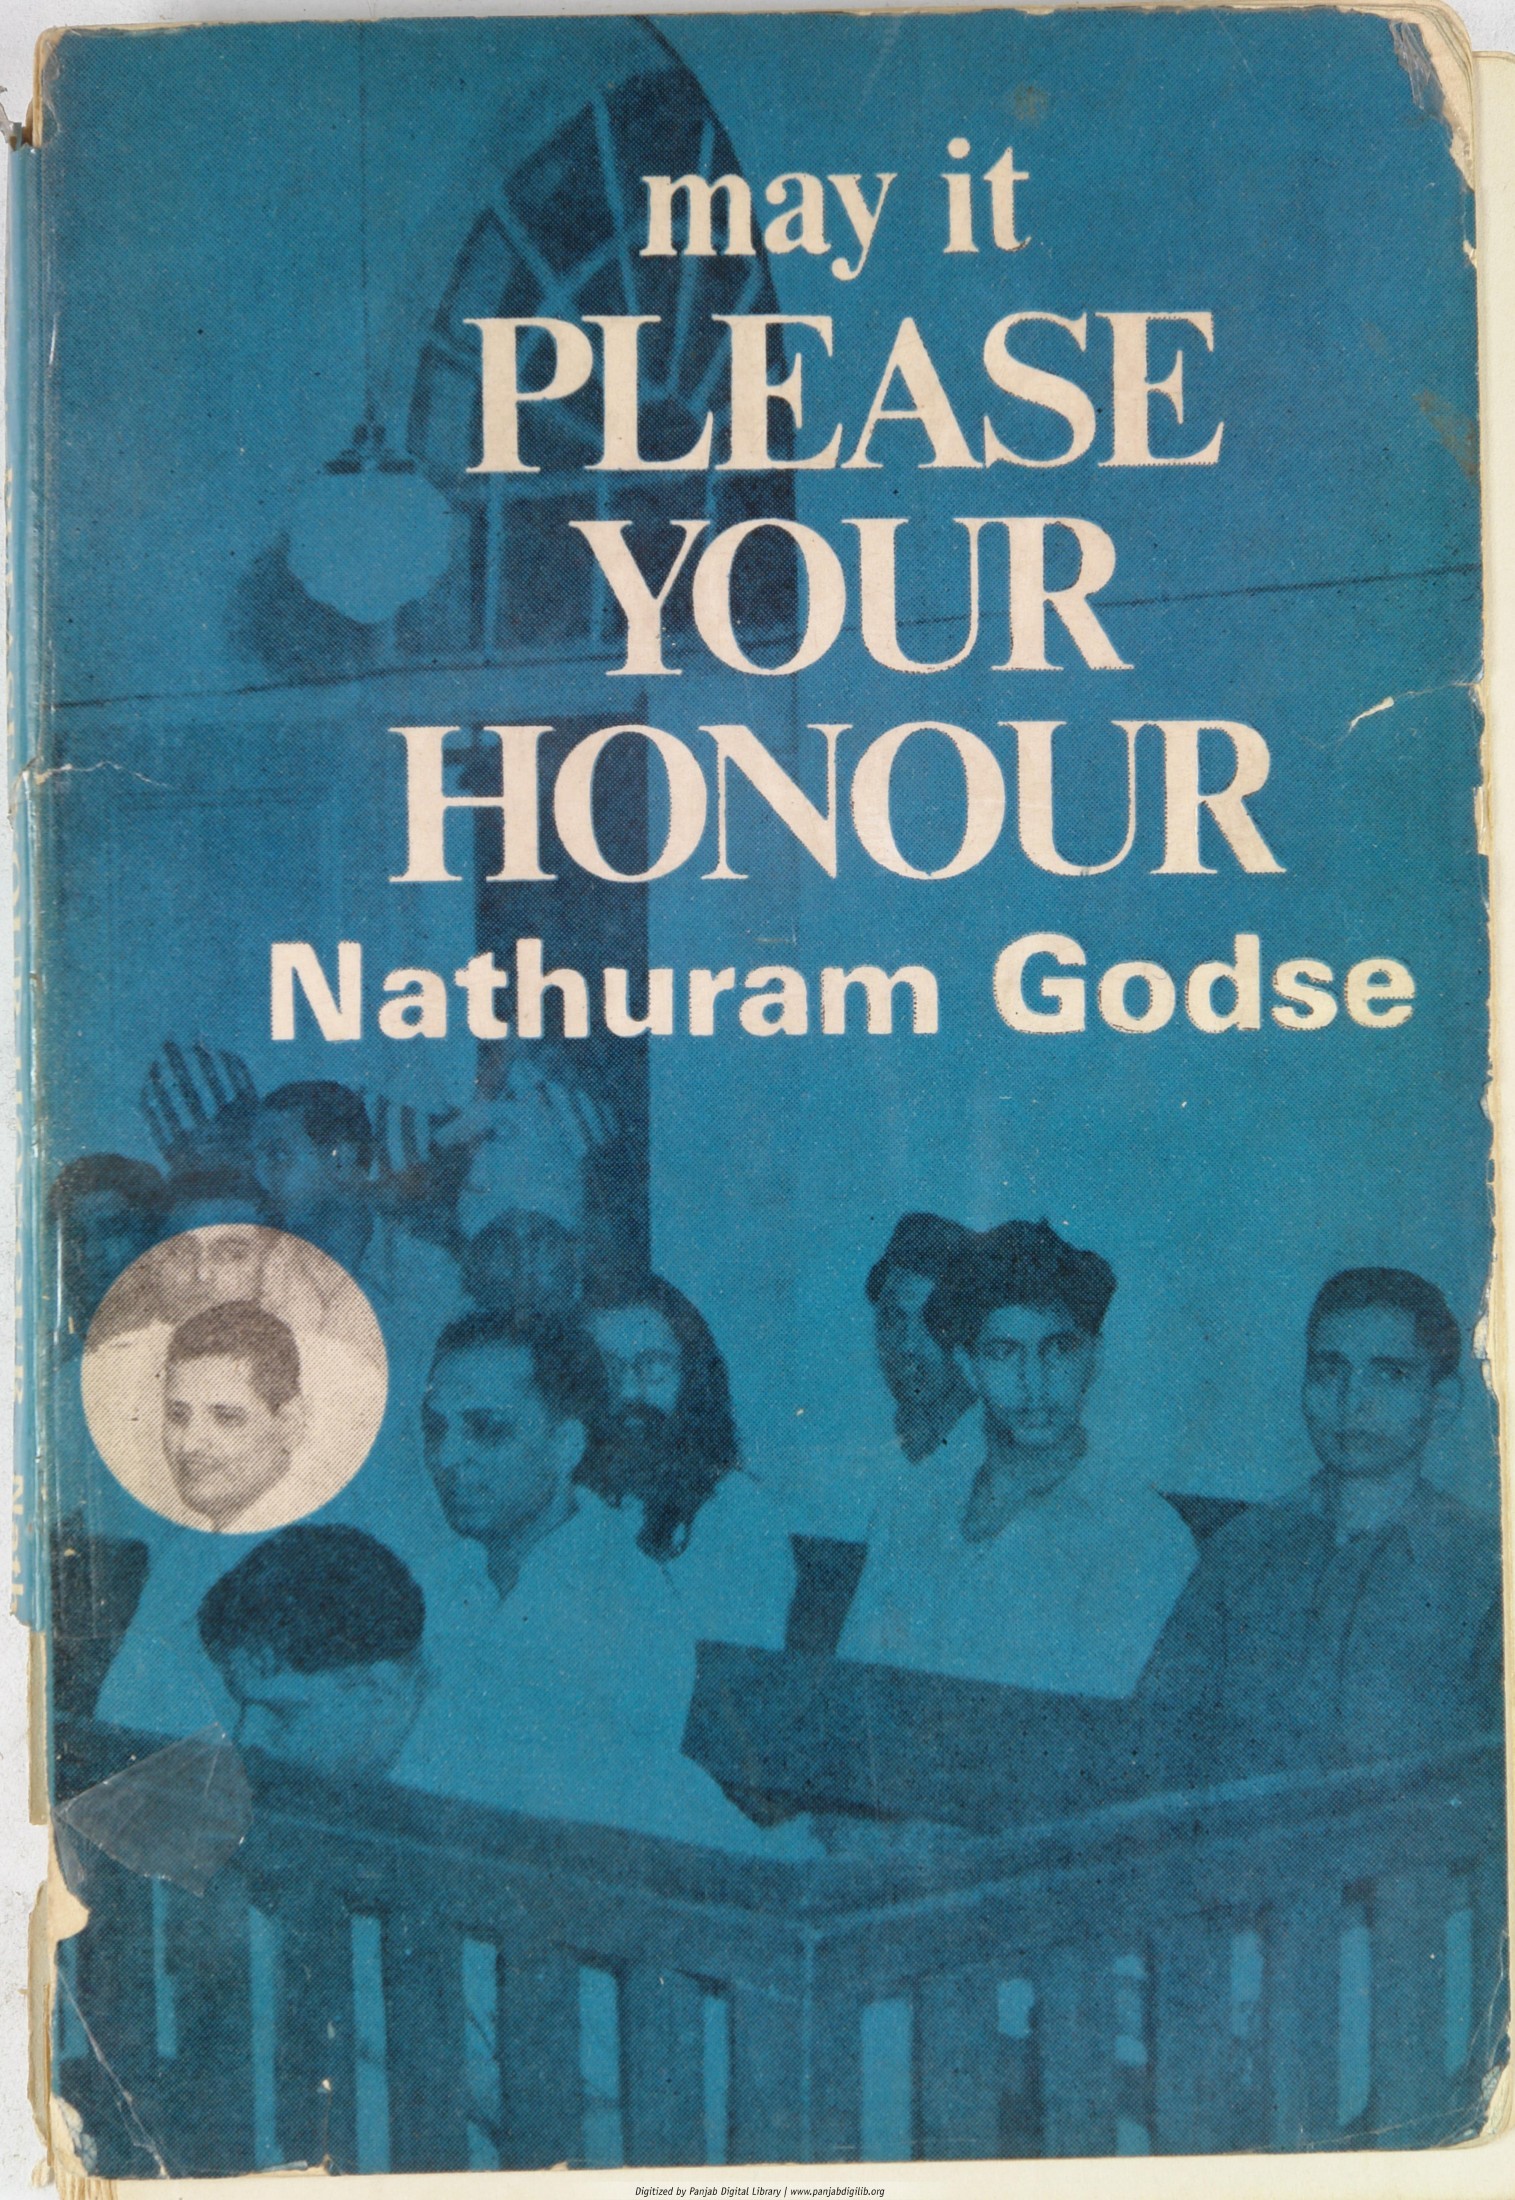 May It Please Your Honour: Statement of Nathuram Godse (1989) by Nathuram Vinayak Godse